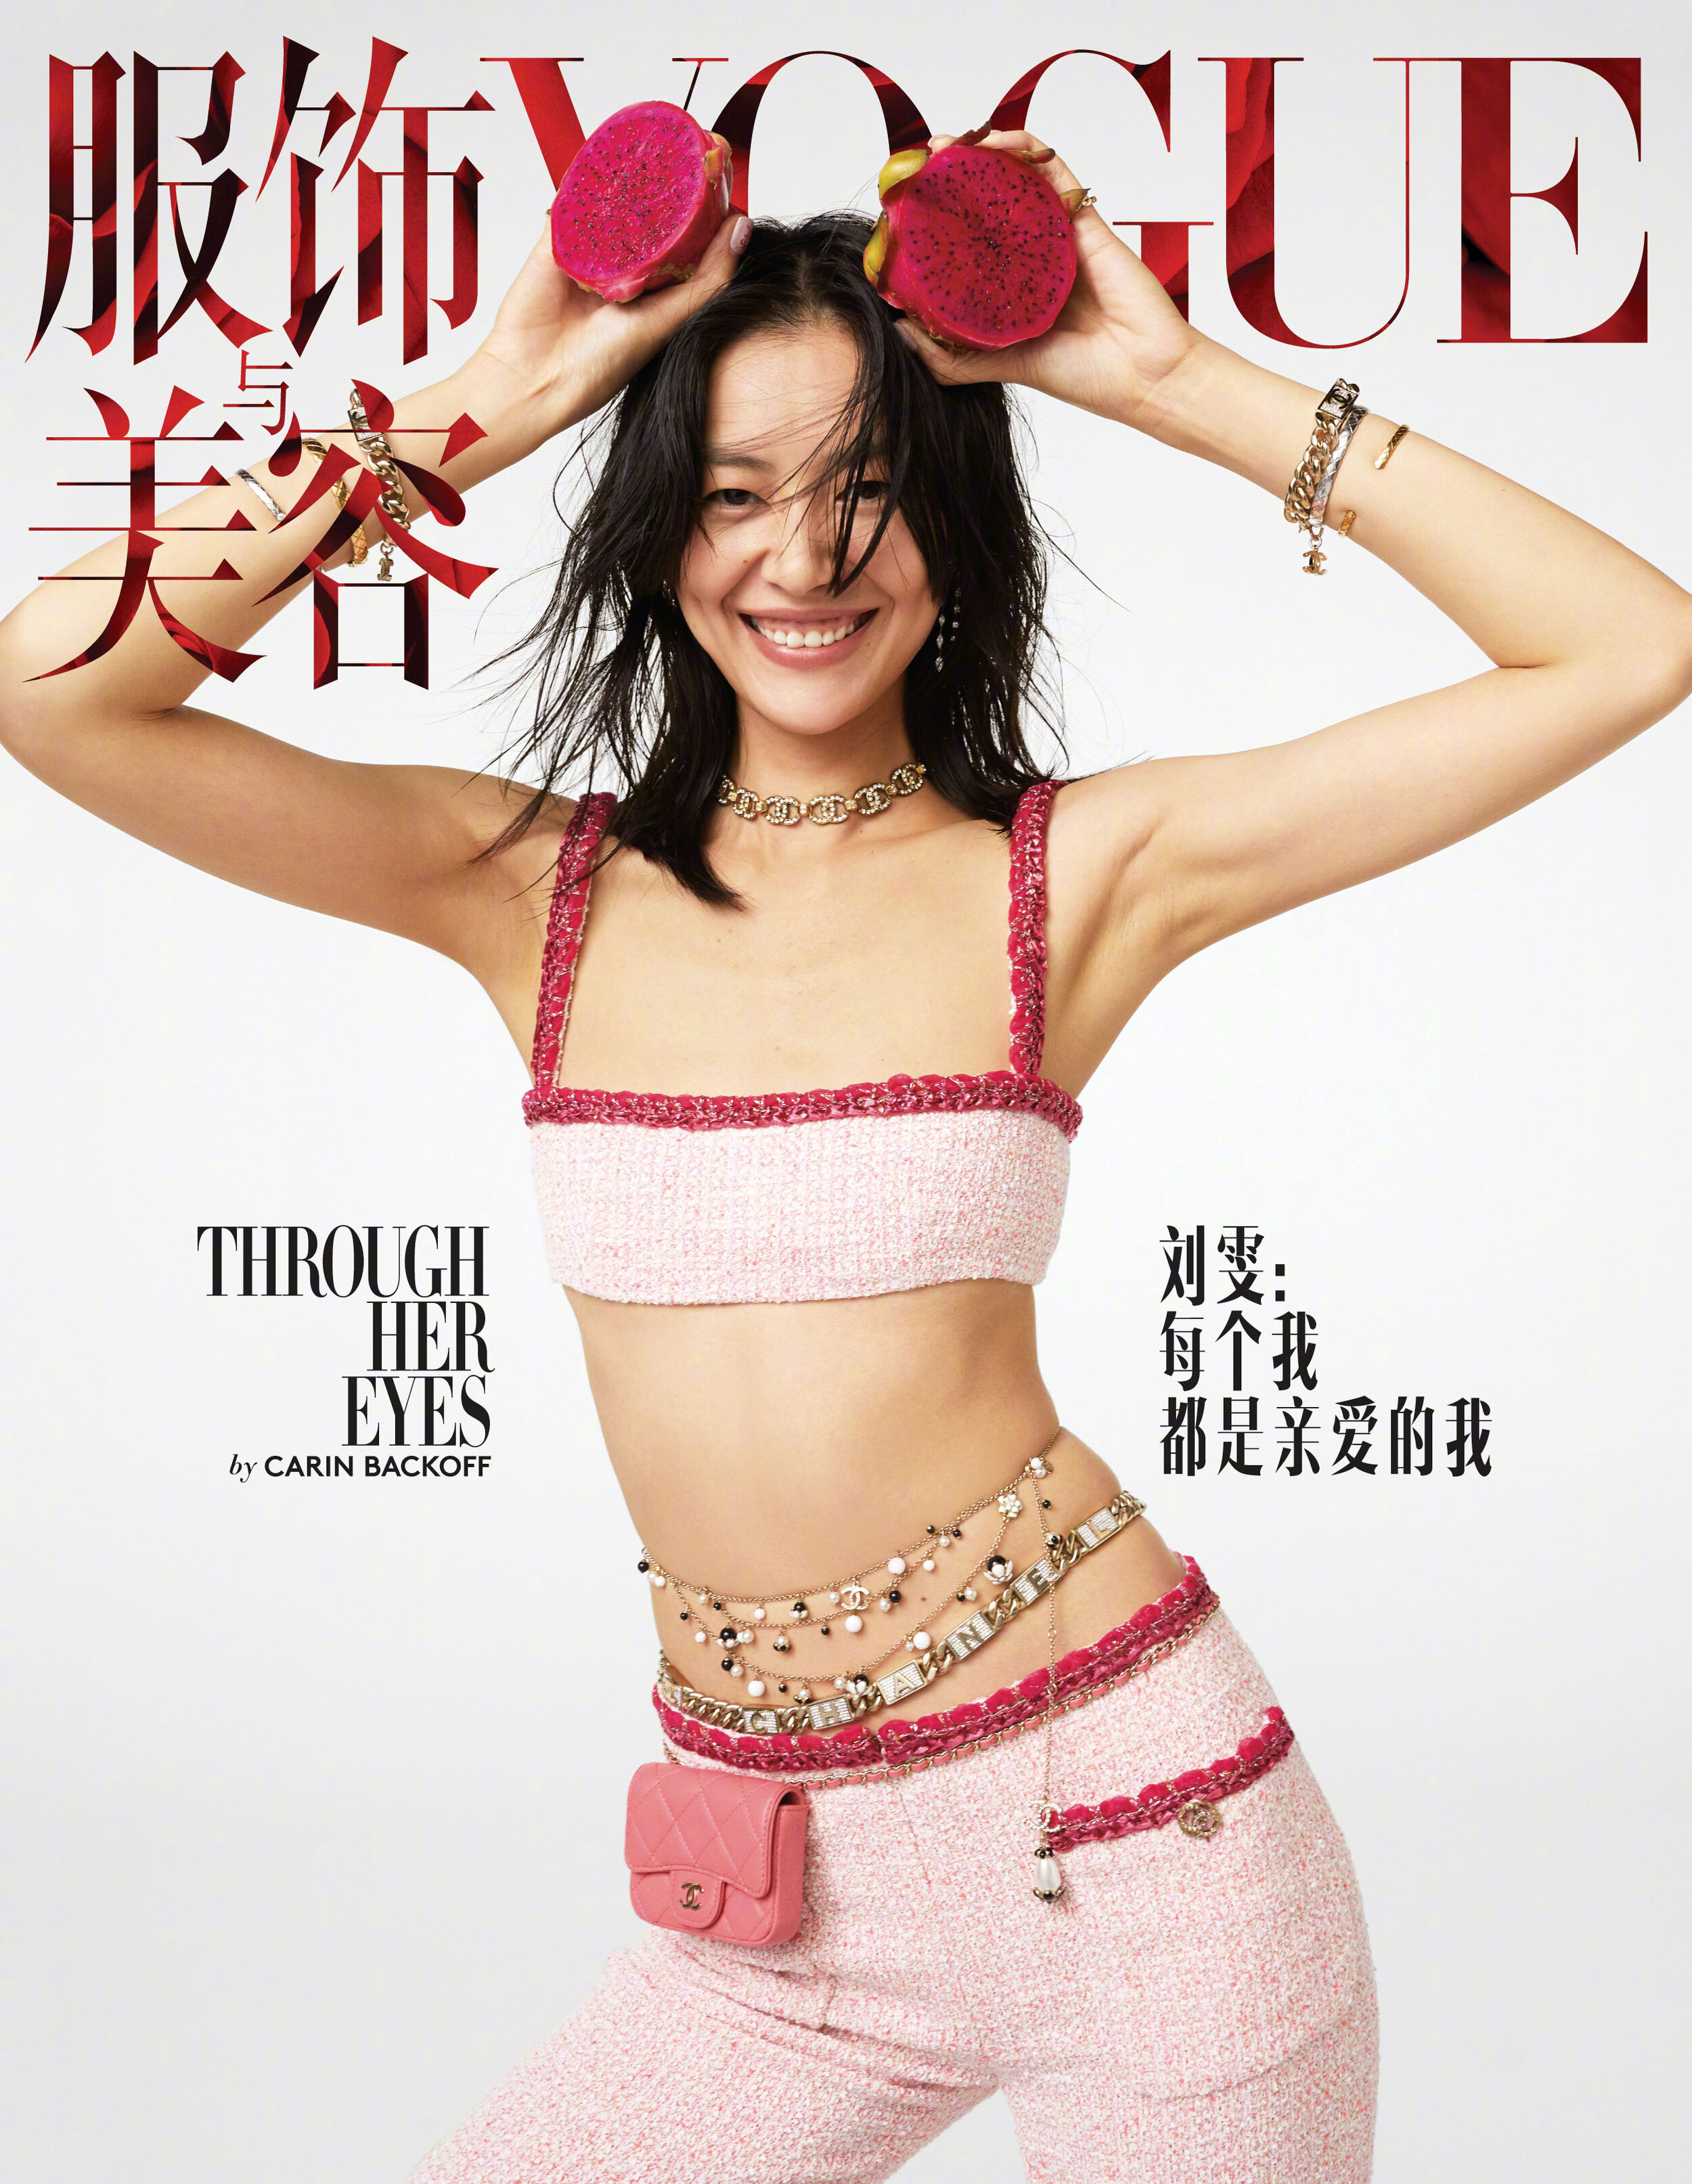 Liu Wen by Carin Backoff for Vogue China November 2020